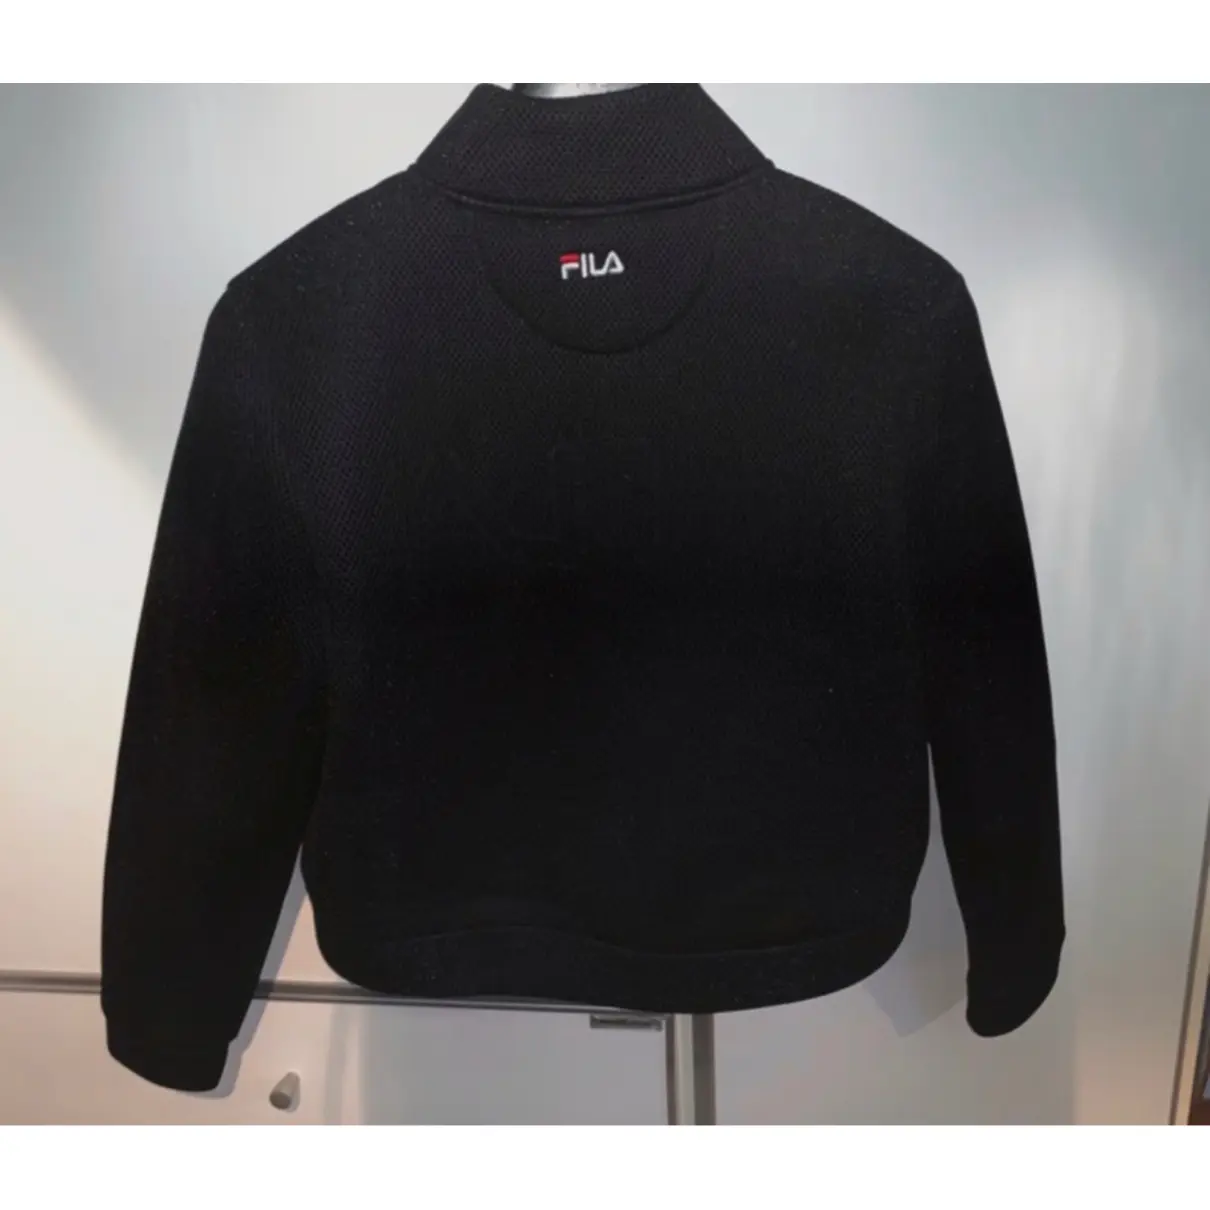 Buy Fila Sweatshirt online